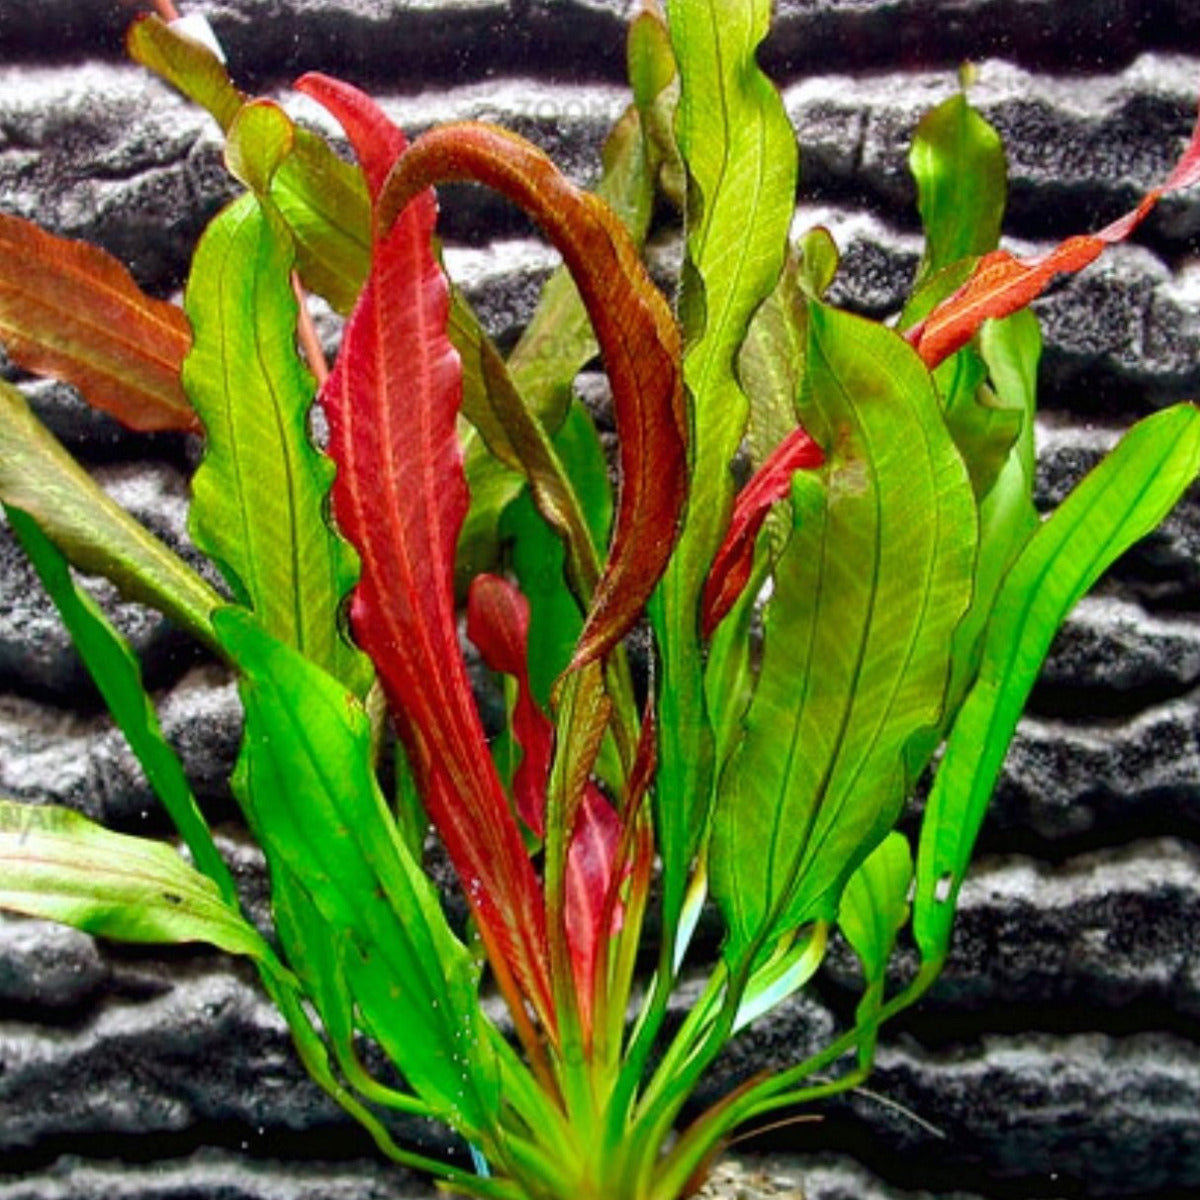 Red Rubin(Echinodorus)